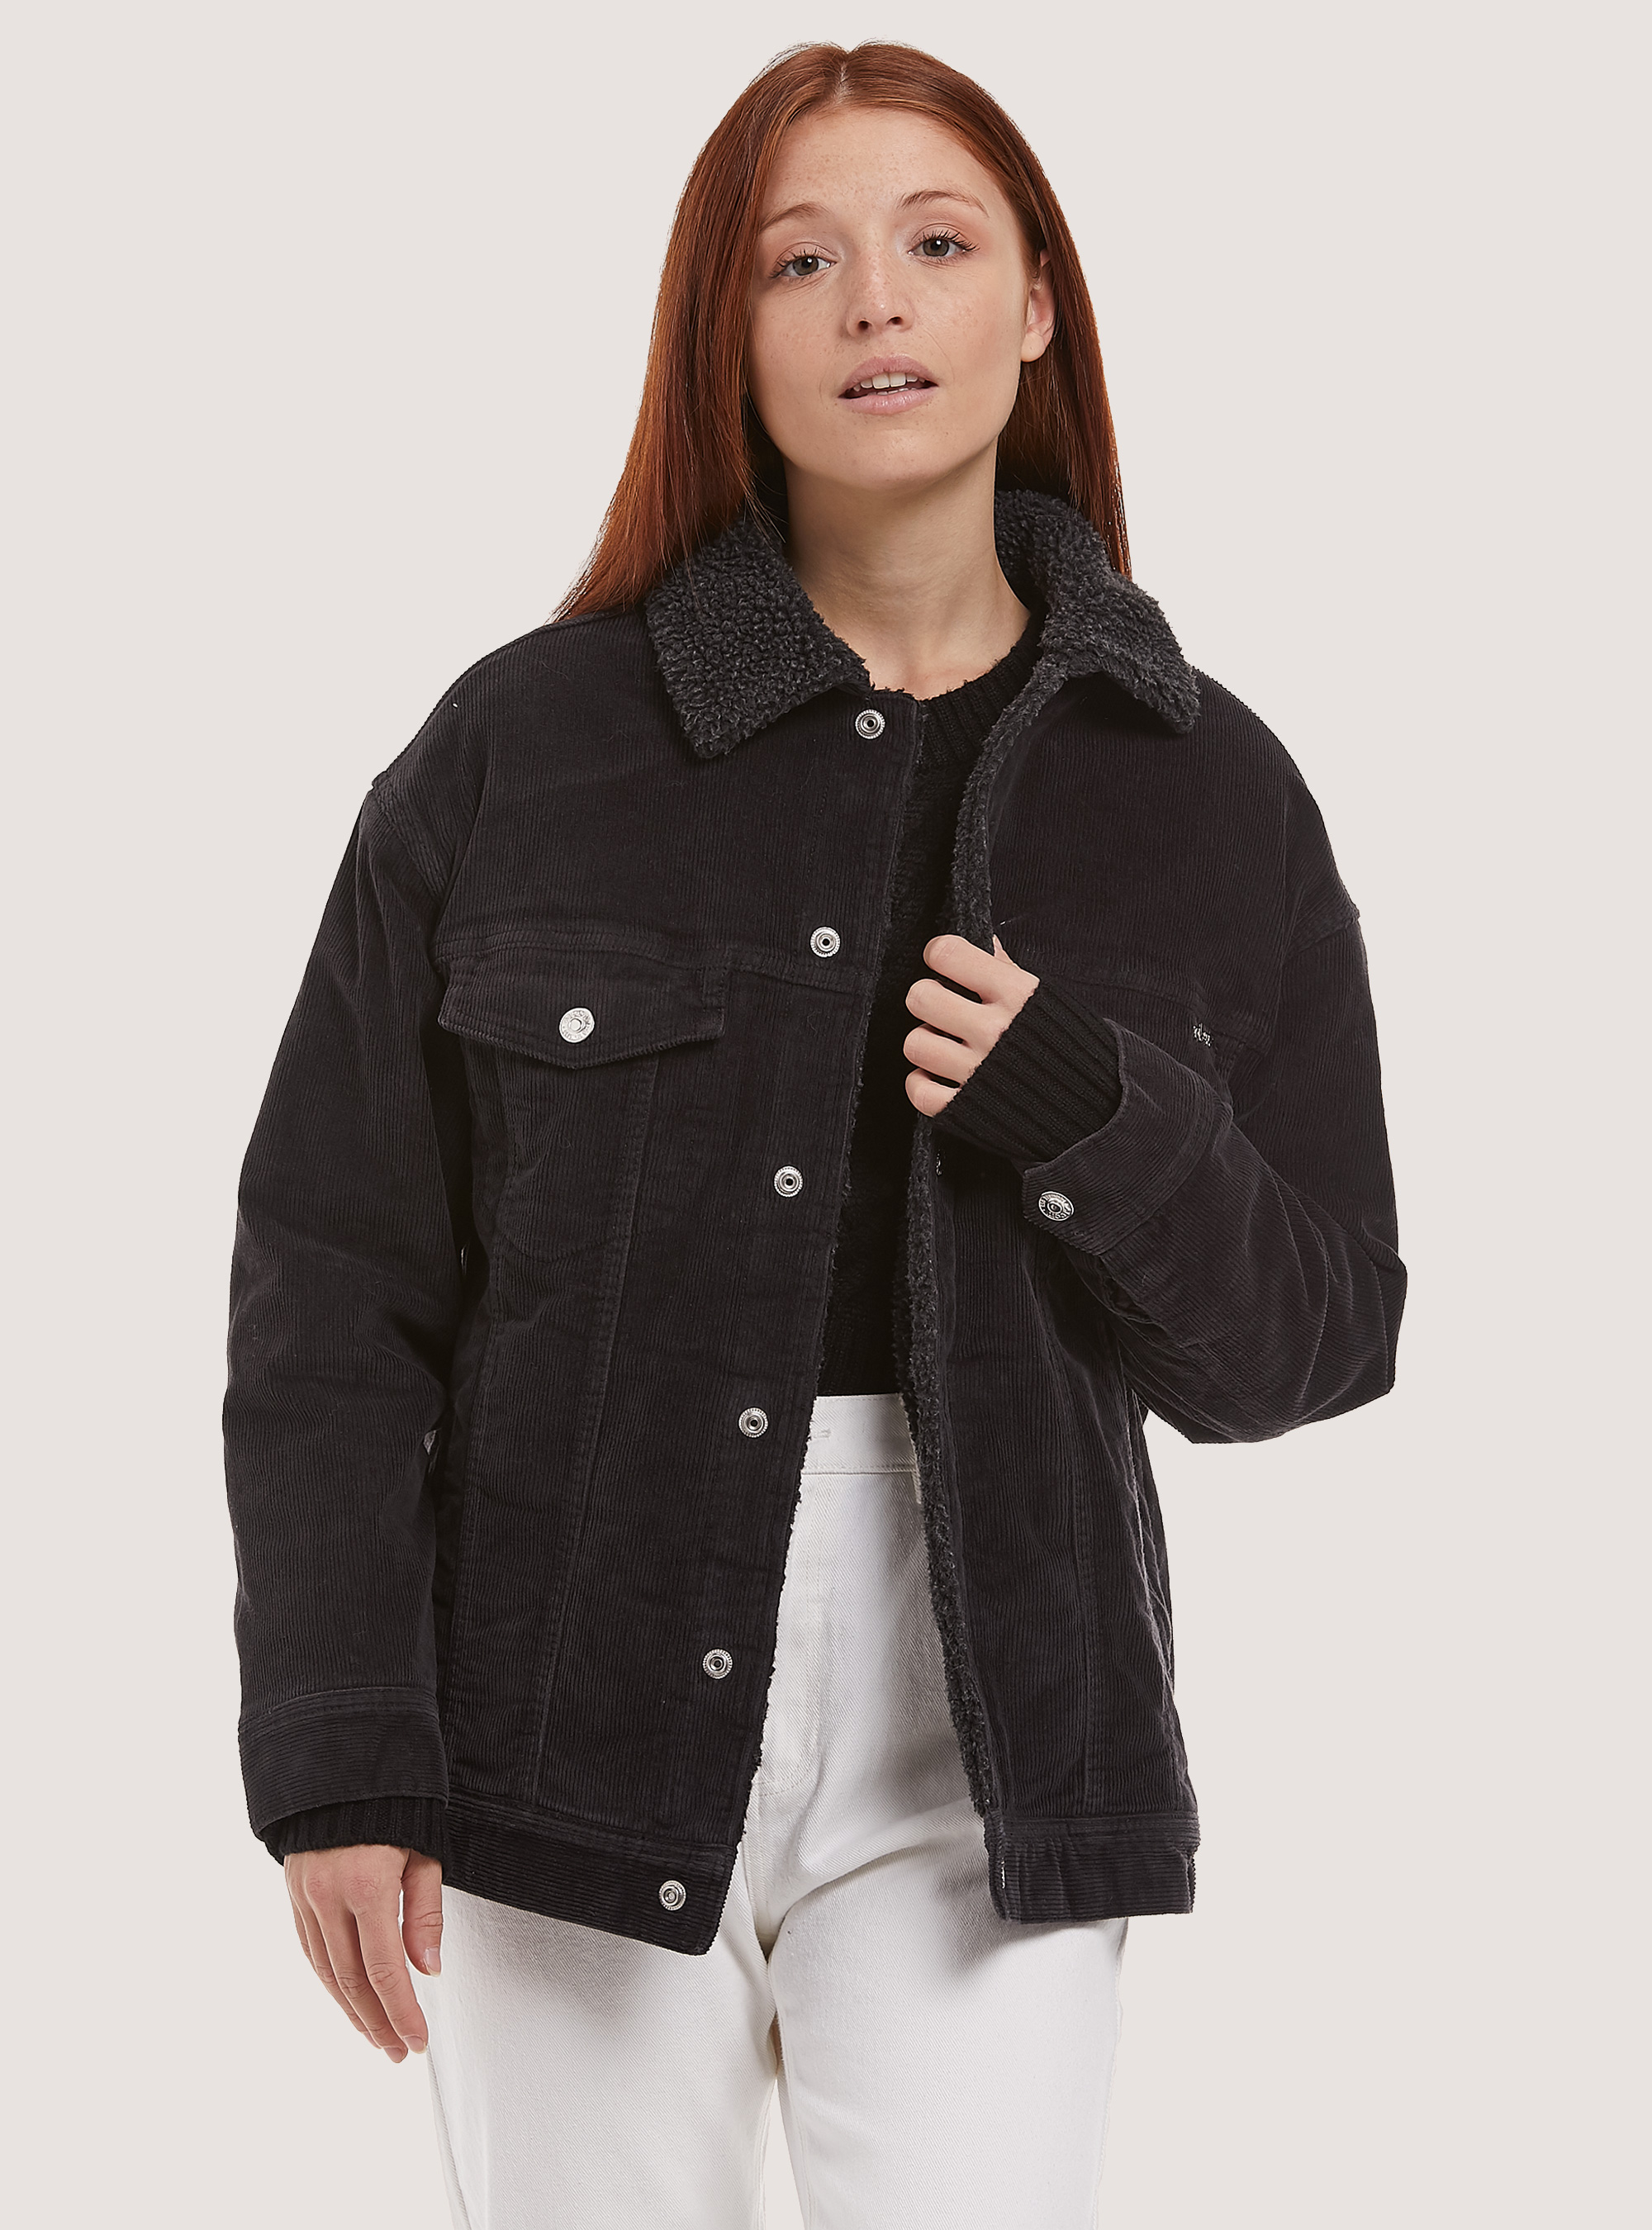 Truker jacket with teddy inside | Alcott | Women's Jackets